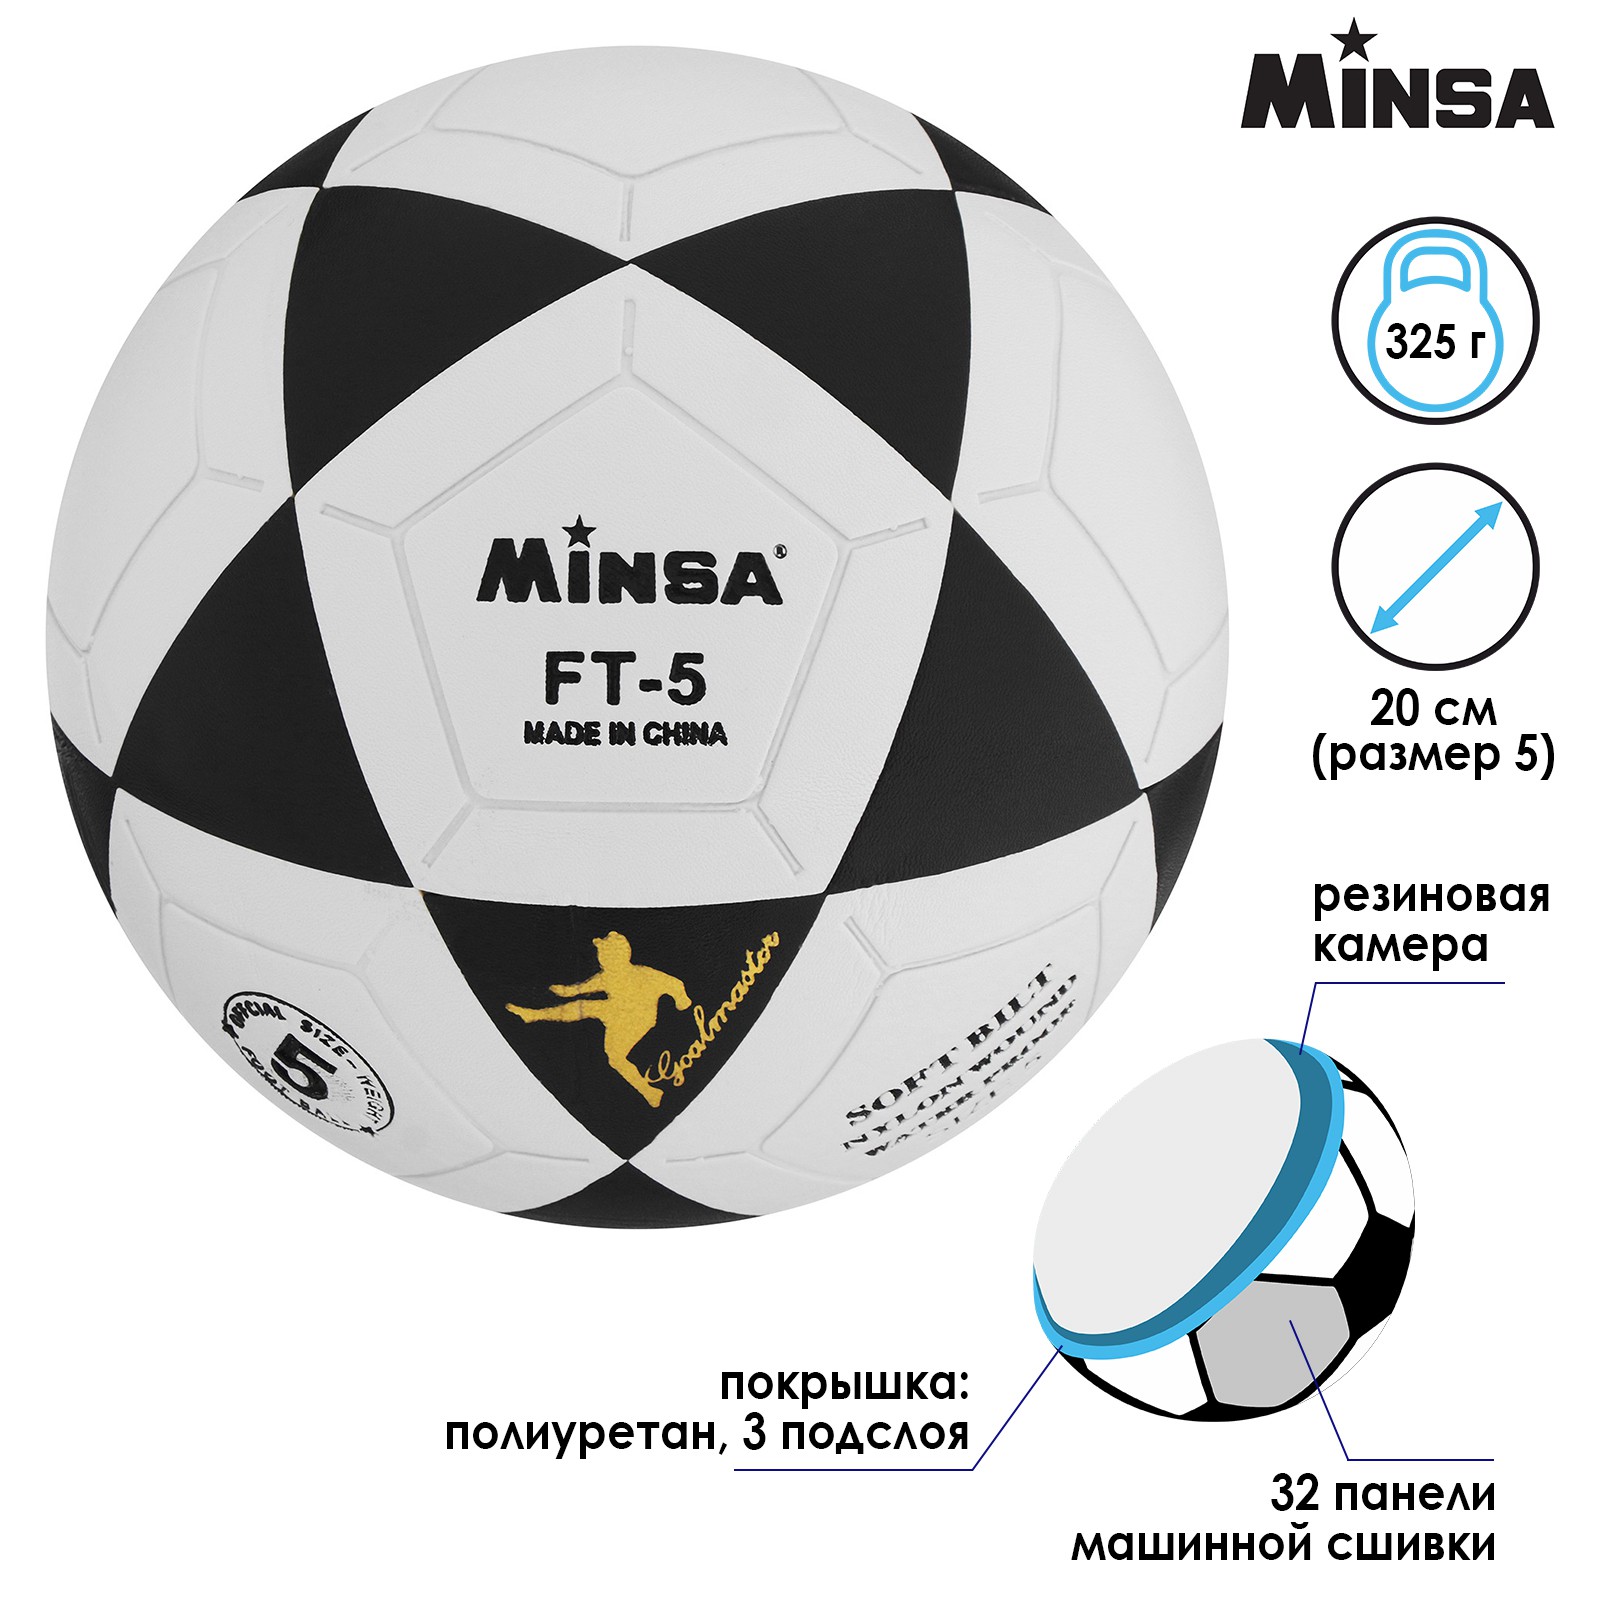 Мяч MINSA футбольный PU. машинная сшивка. 32 панели. размер 5. 325 г - фото 2